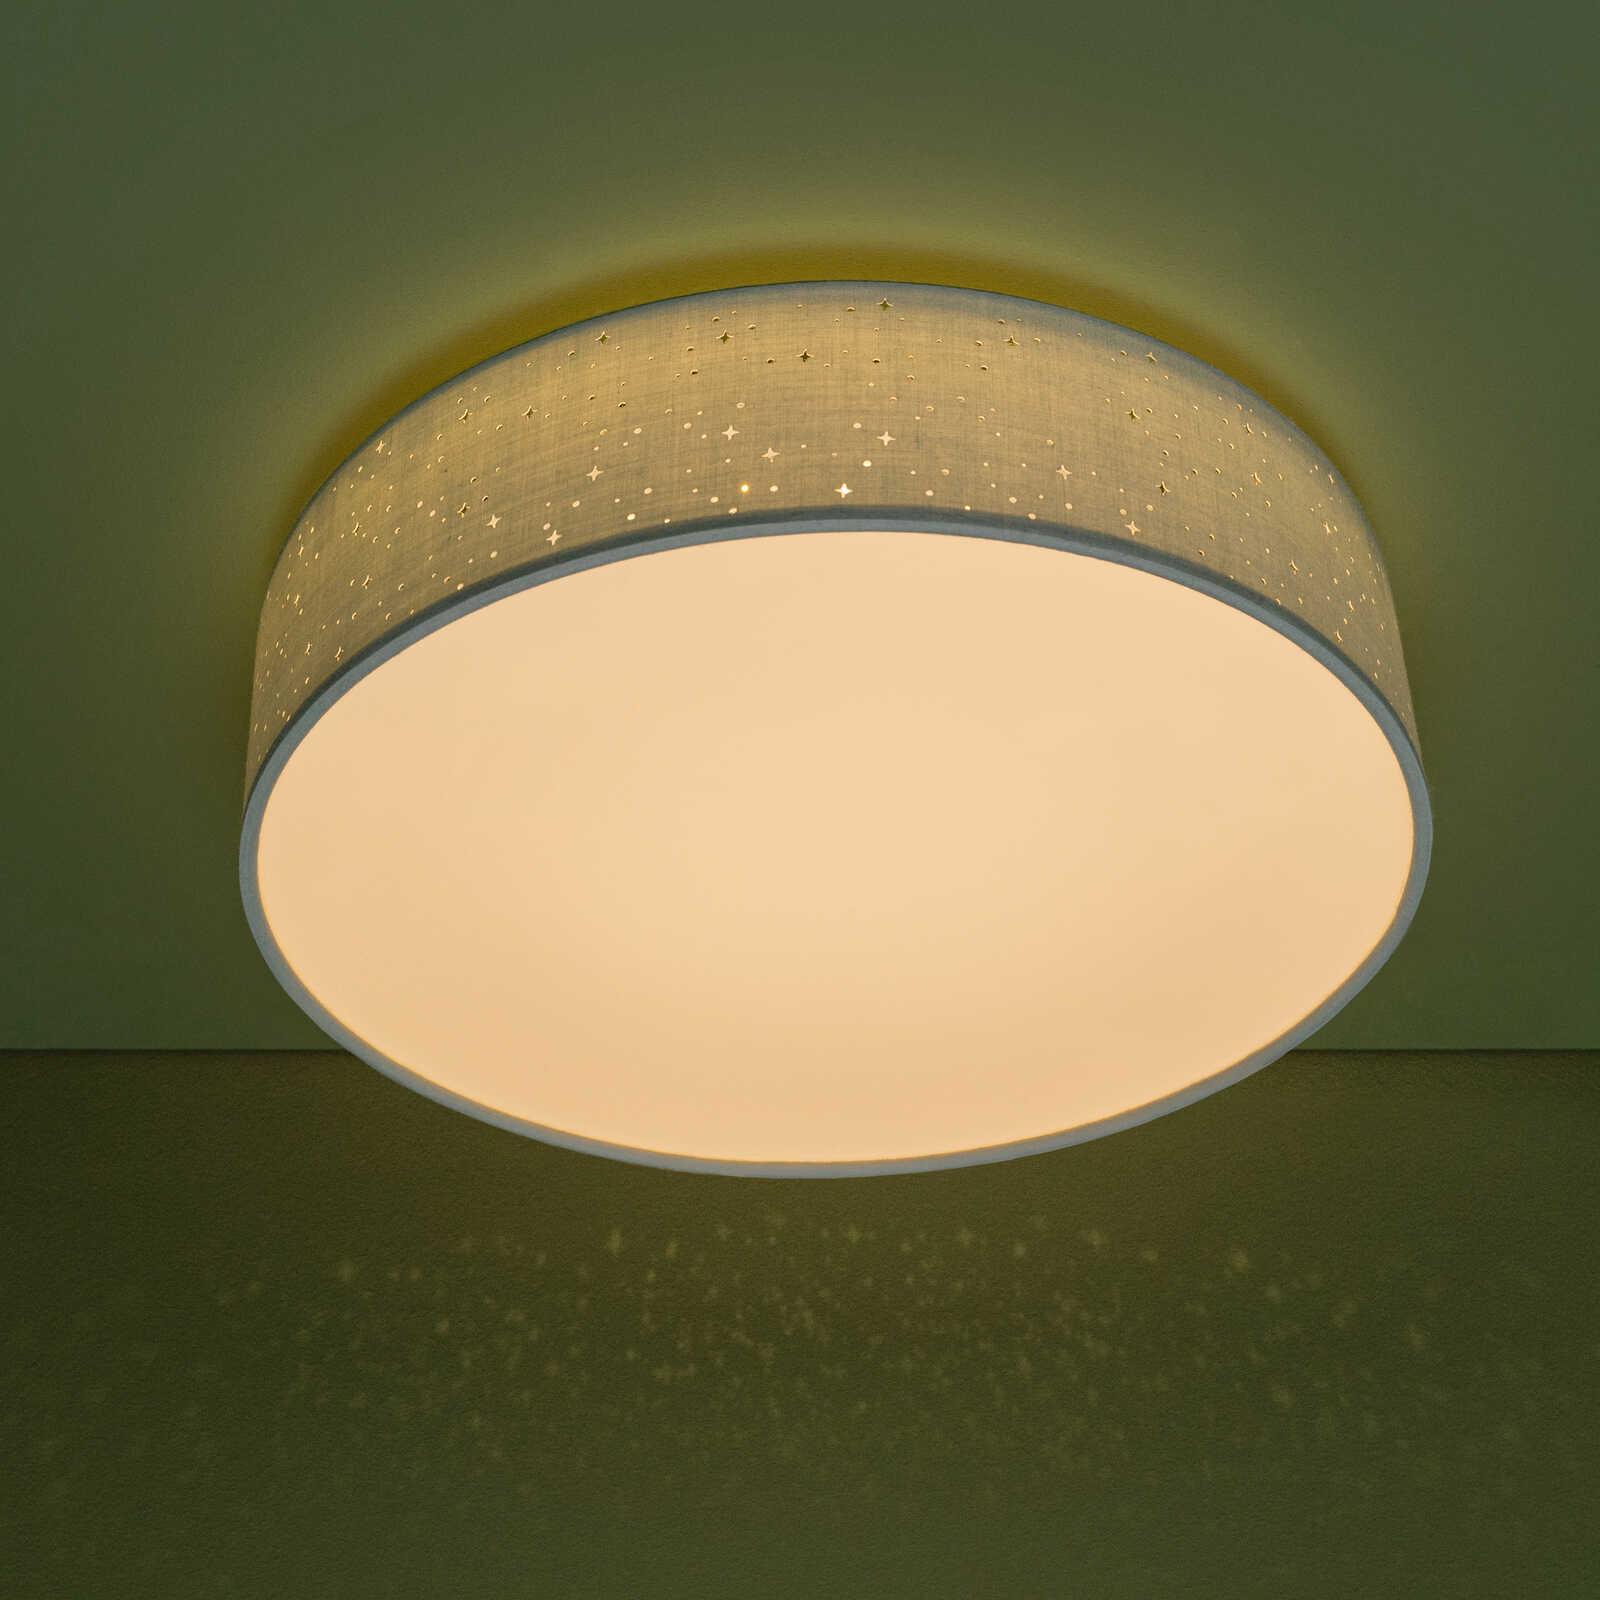             Textile ceiling light - Ava 2 - Green
        